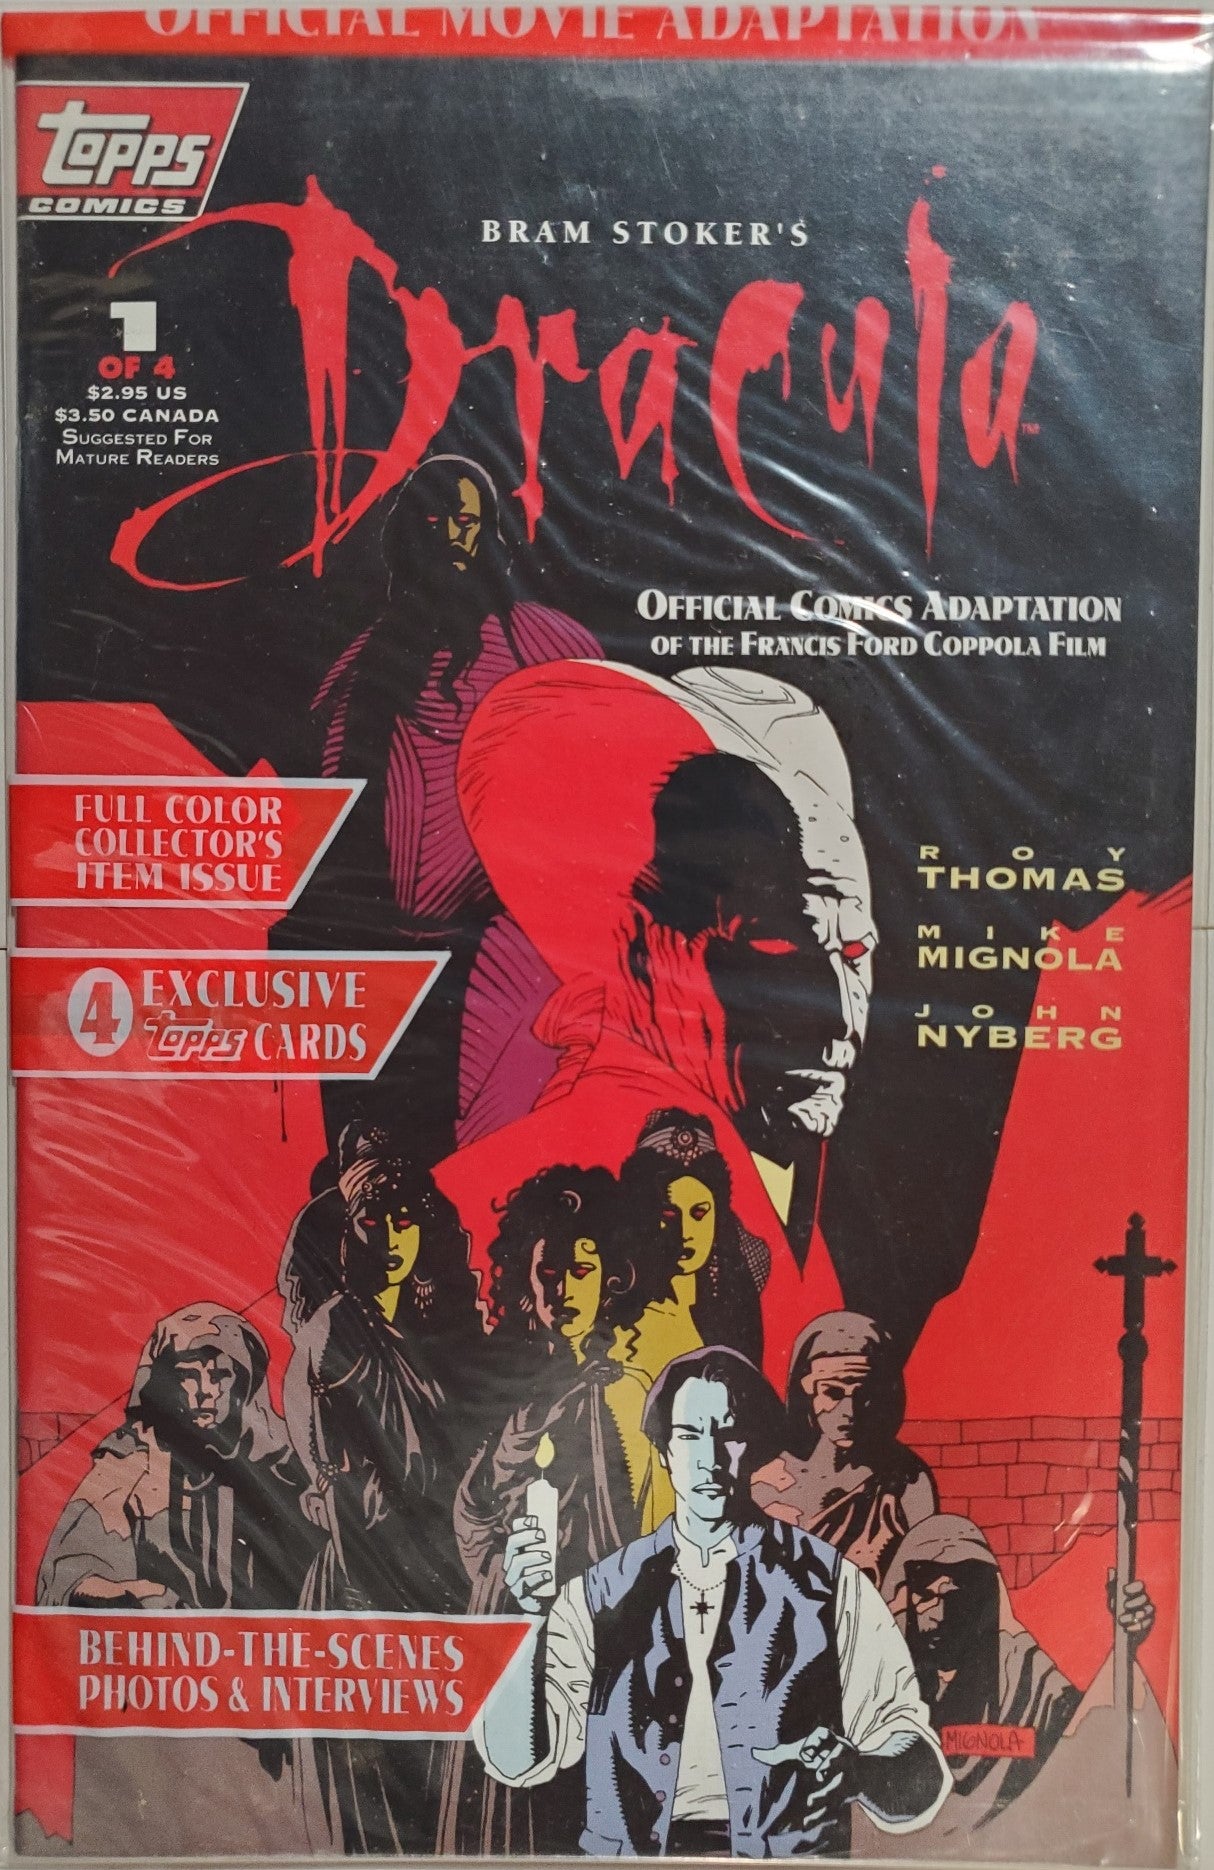 Bram Stokers Dracula #1 movie adaptation